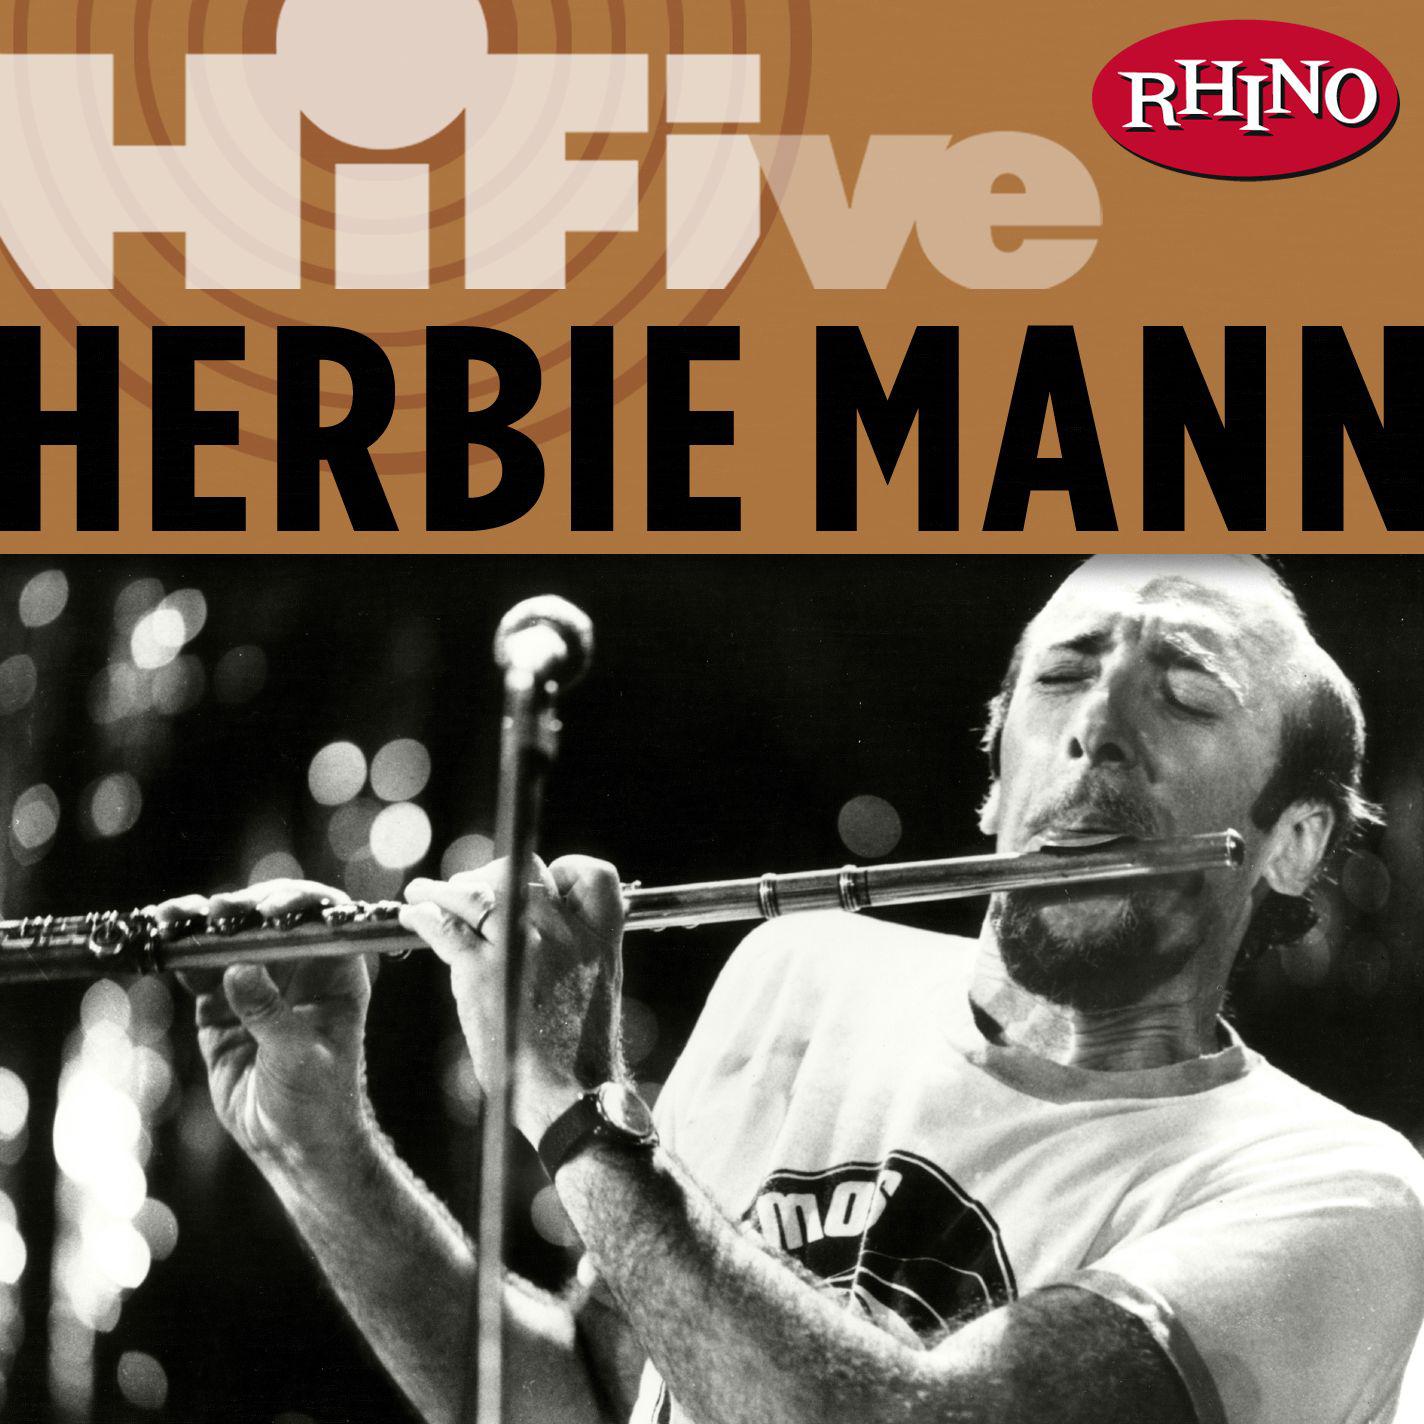 Rhino Hi-Five: Herbie Mann